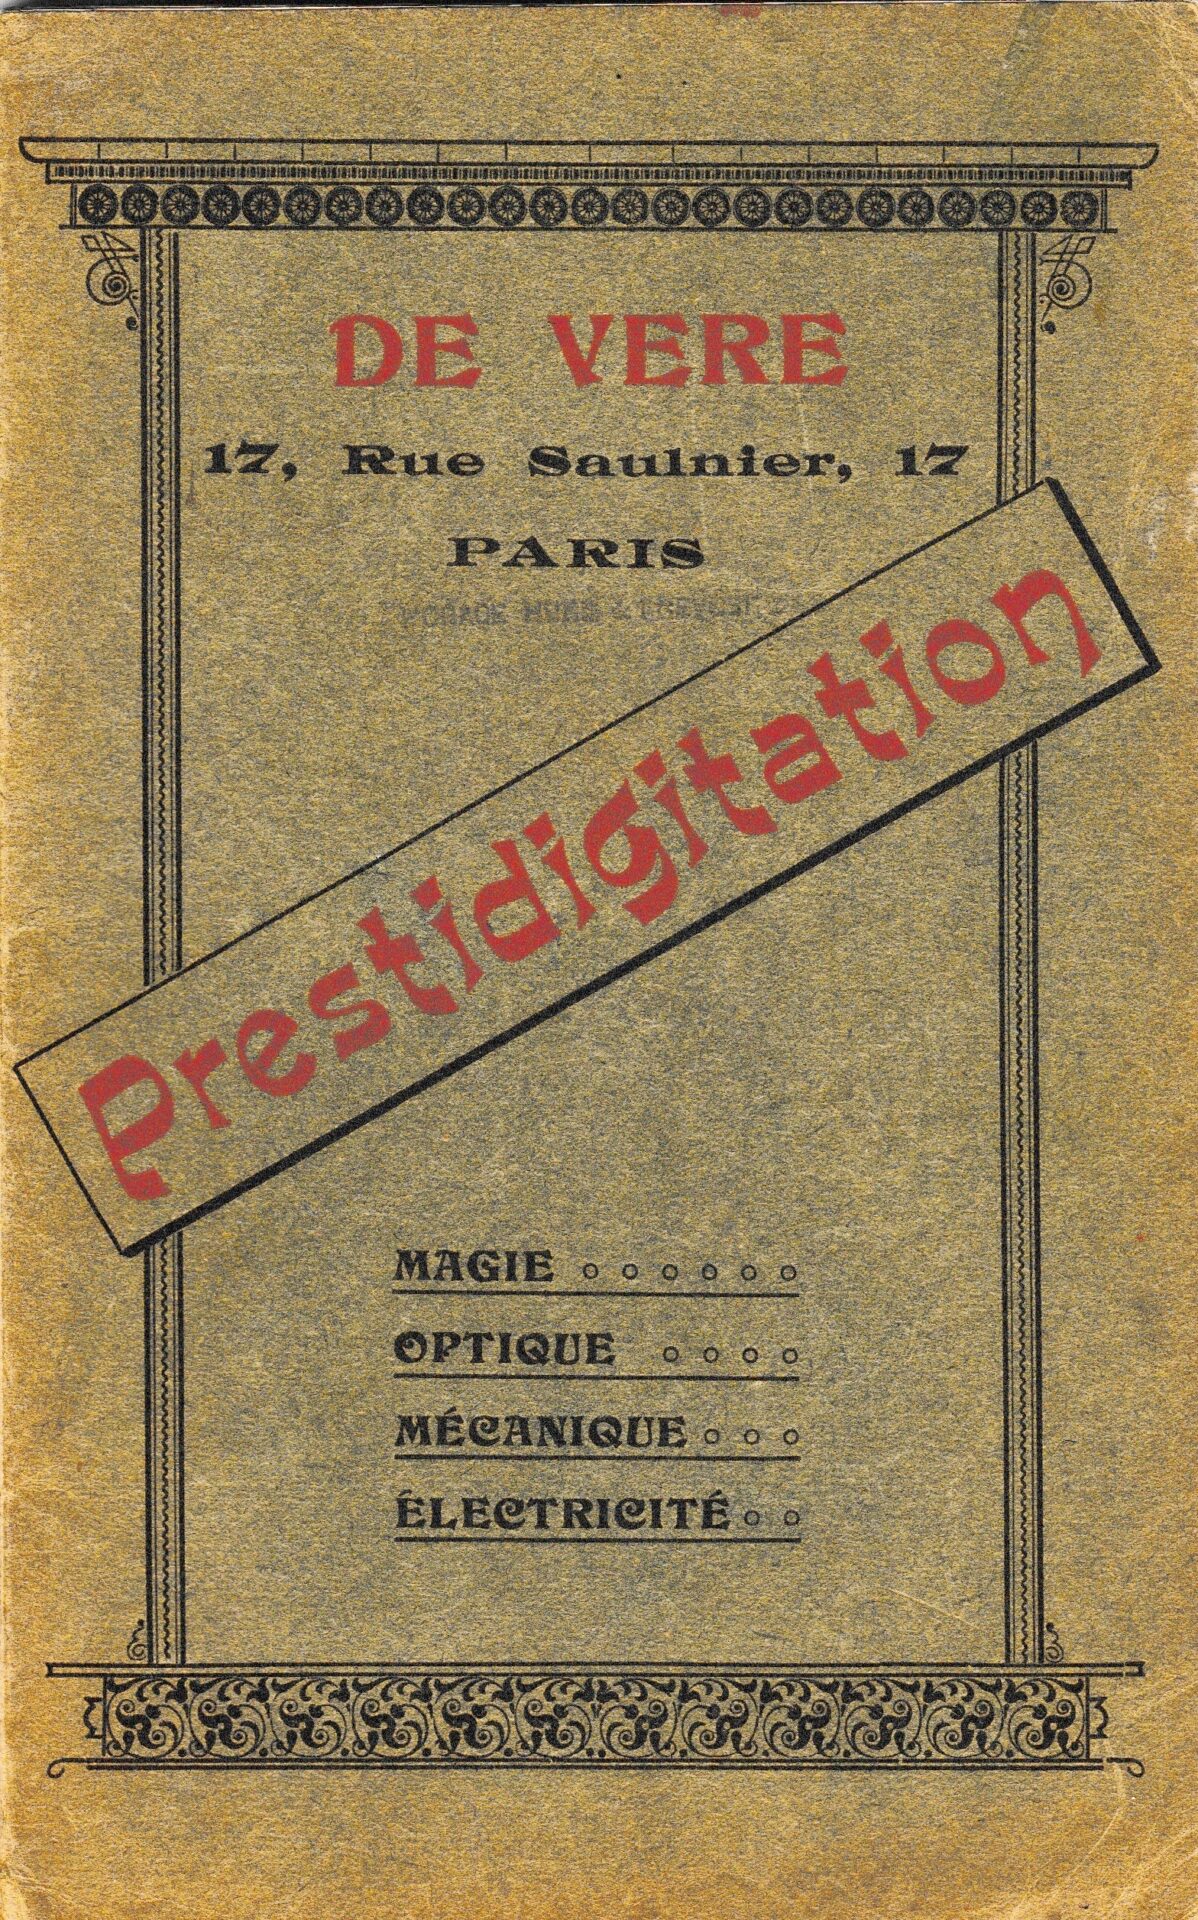 De Vere Prestidigitation catalogue from 17 Rue Saulnier, Paris